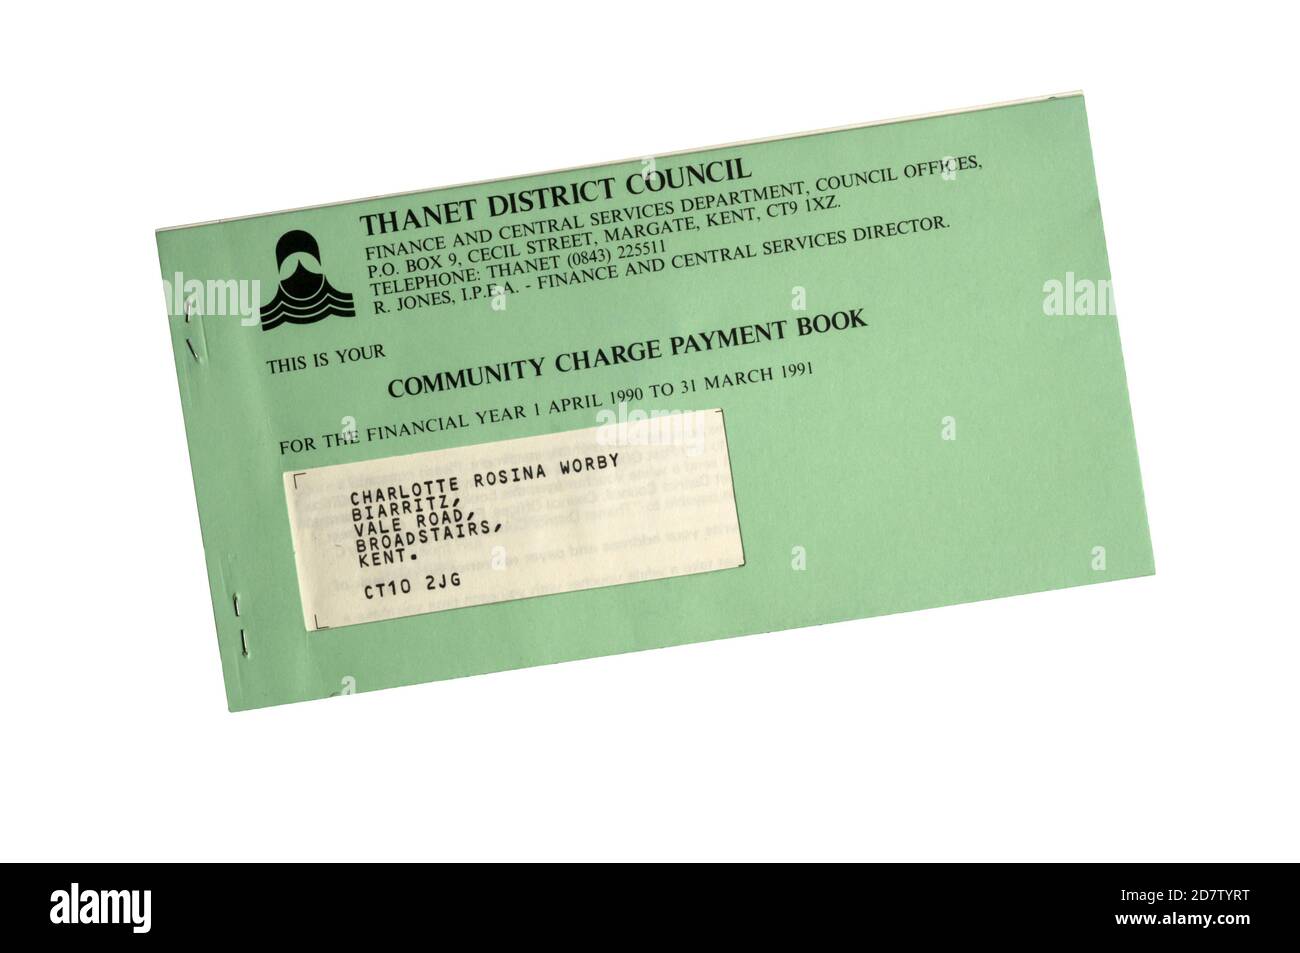 1990 Livre de paiement des frais communautaires du Conseil de district de Thanet, généralement connu sous le nom de taxe de sondage. Banque D'Images